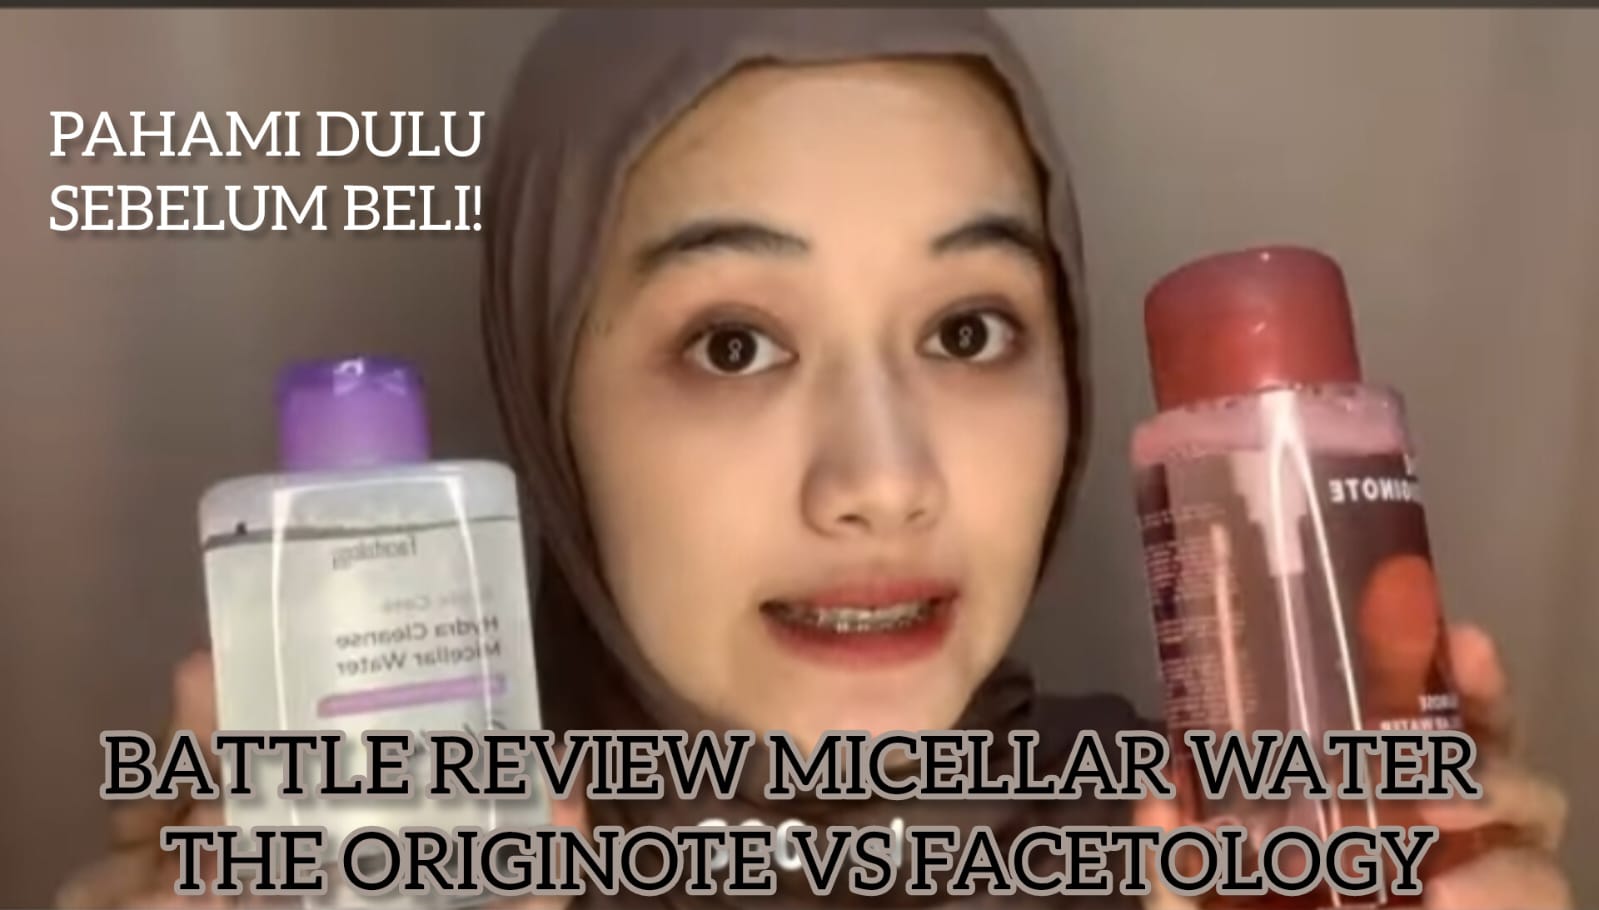 Battle Review Micellar Water Favorit Viral The Originote vs Facetology, Mana Lebih Ampuh Angkat Sisa Makeup?